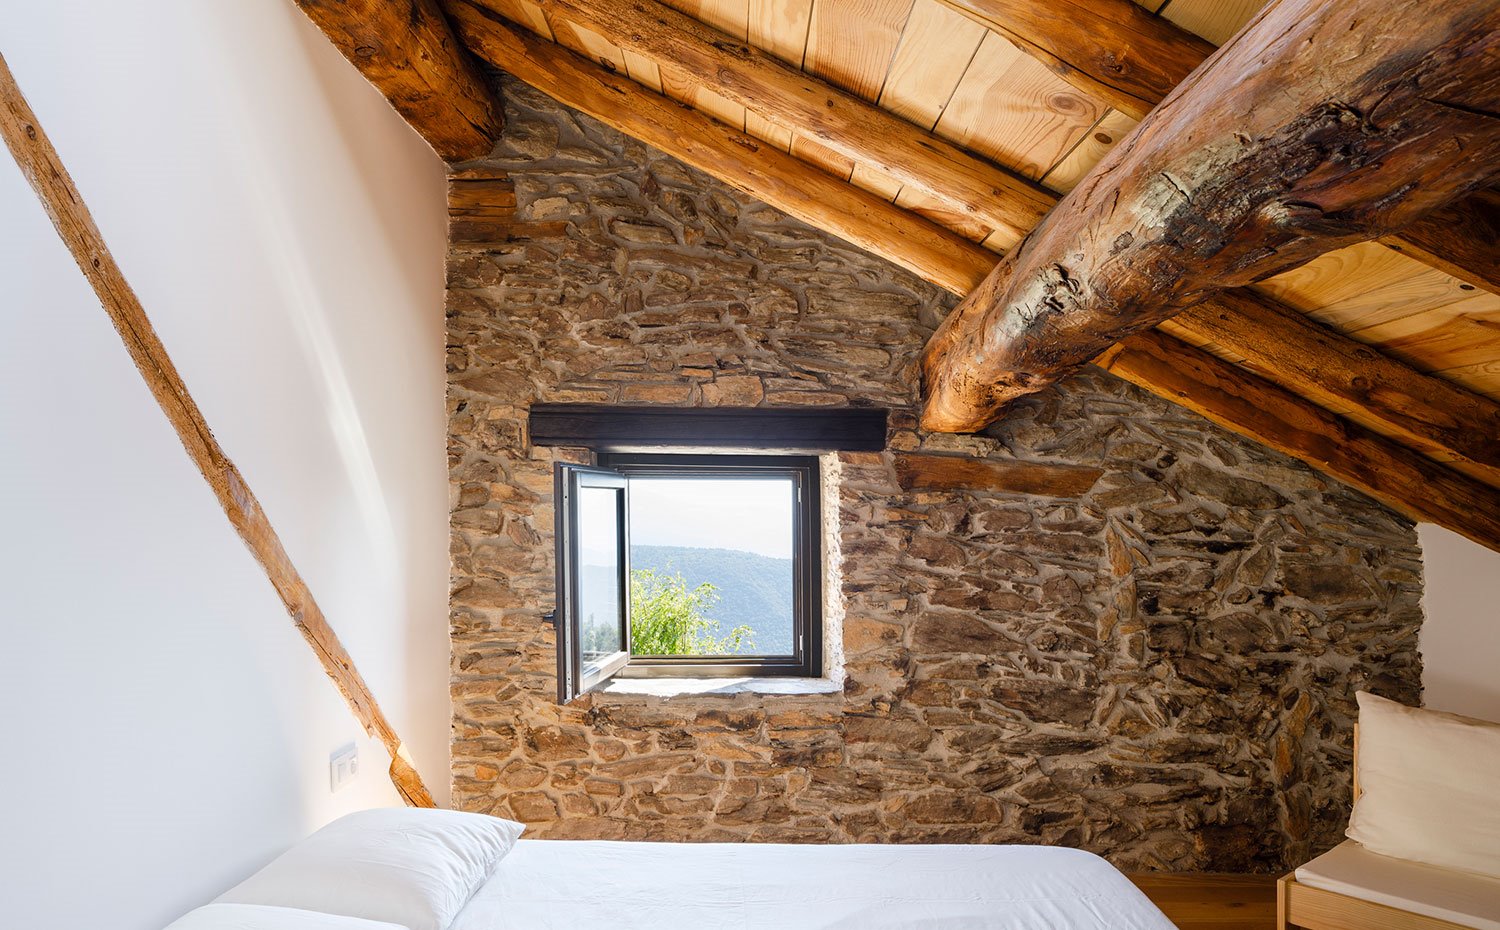 Detalle de ventana hacia el exterior con techo de madera en pendiente sobre cama de dormitorio